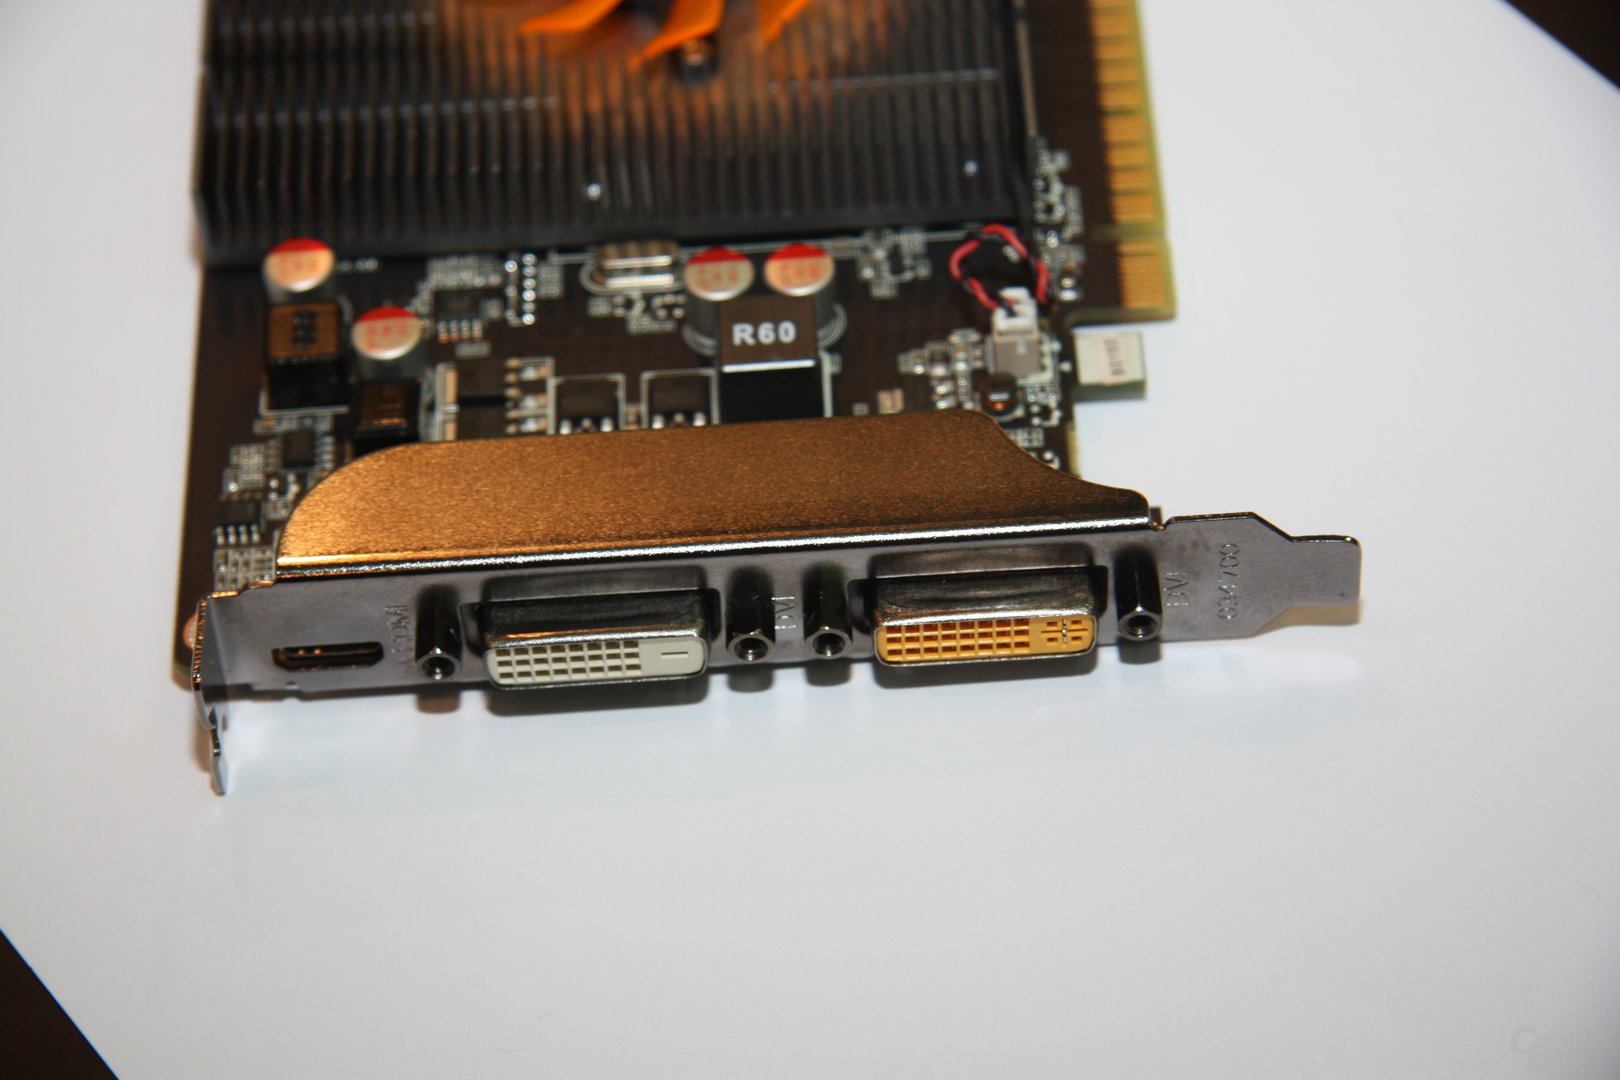 Zotac GeForce GT 640